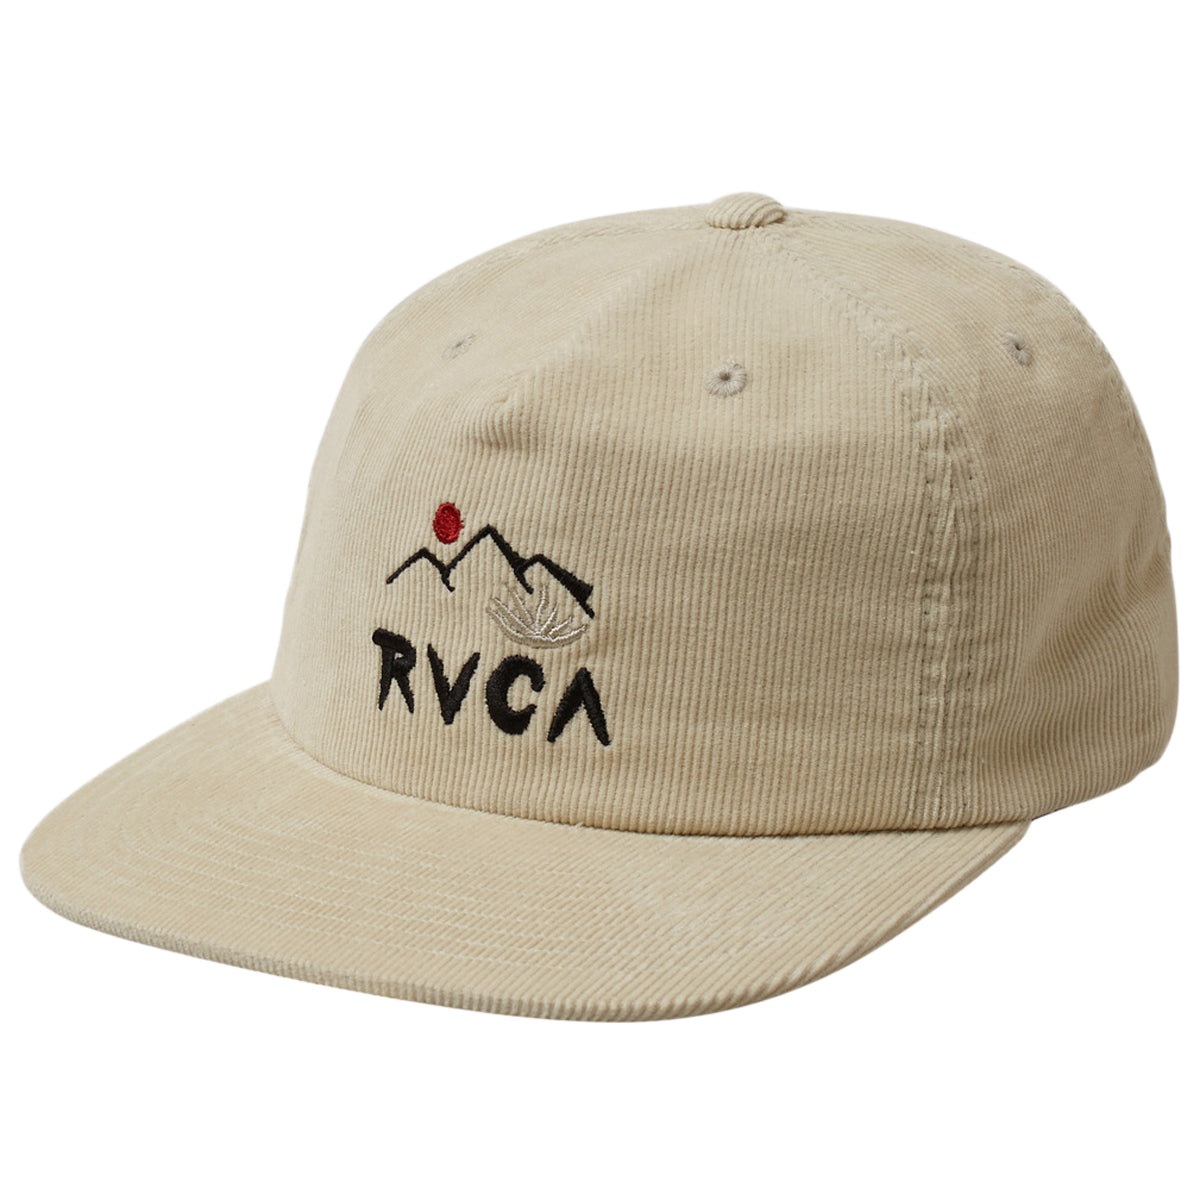 RVCA Innerstate Claspback Hat - Silver Bleach